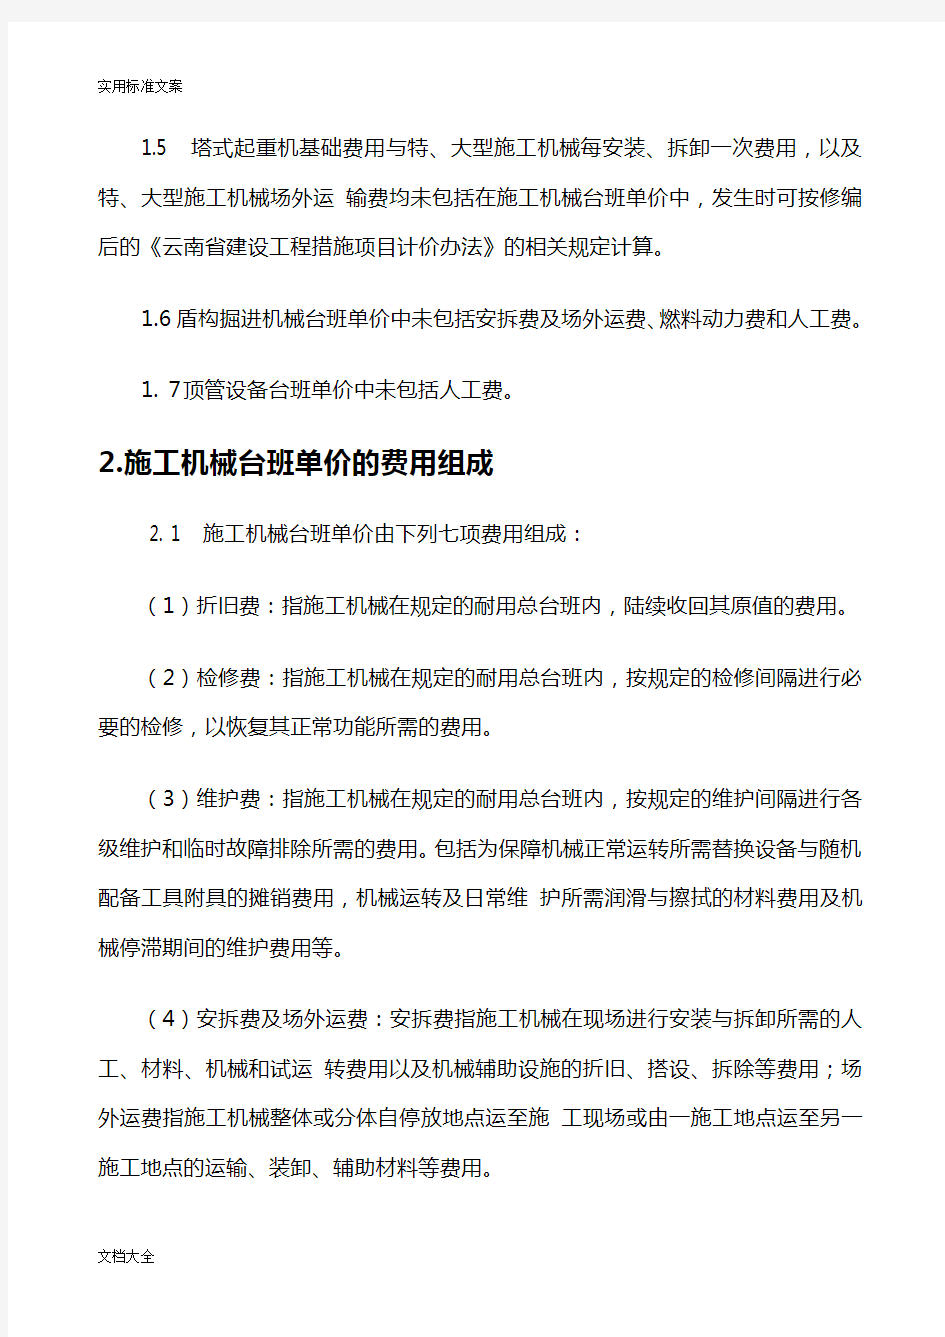 2013云南计价规则电子版